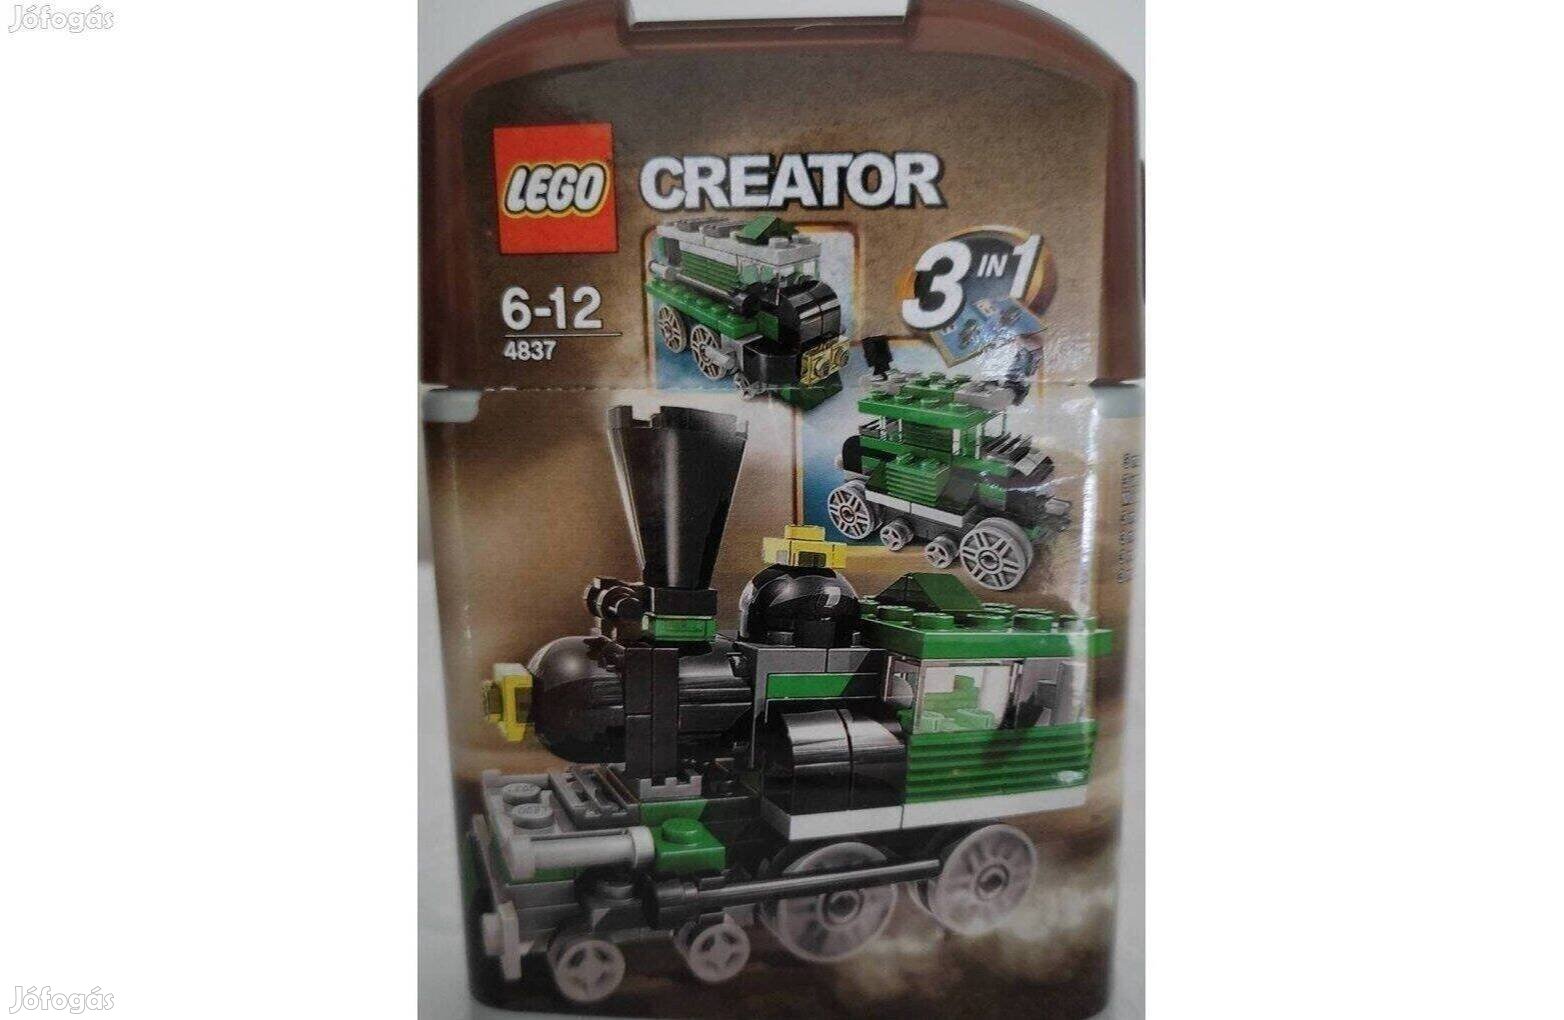 Lego creator 3in1 - mozdony 4837